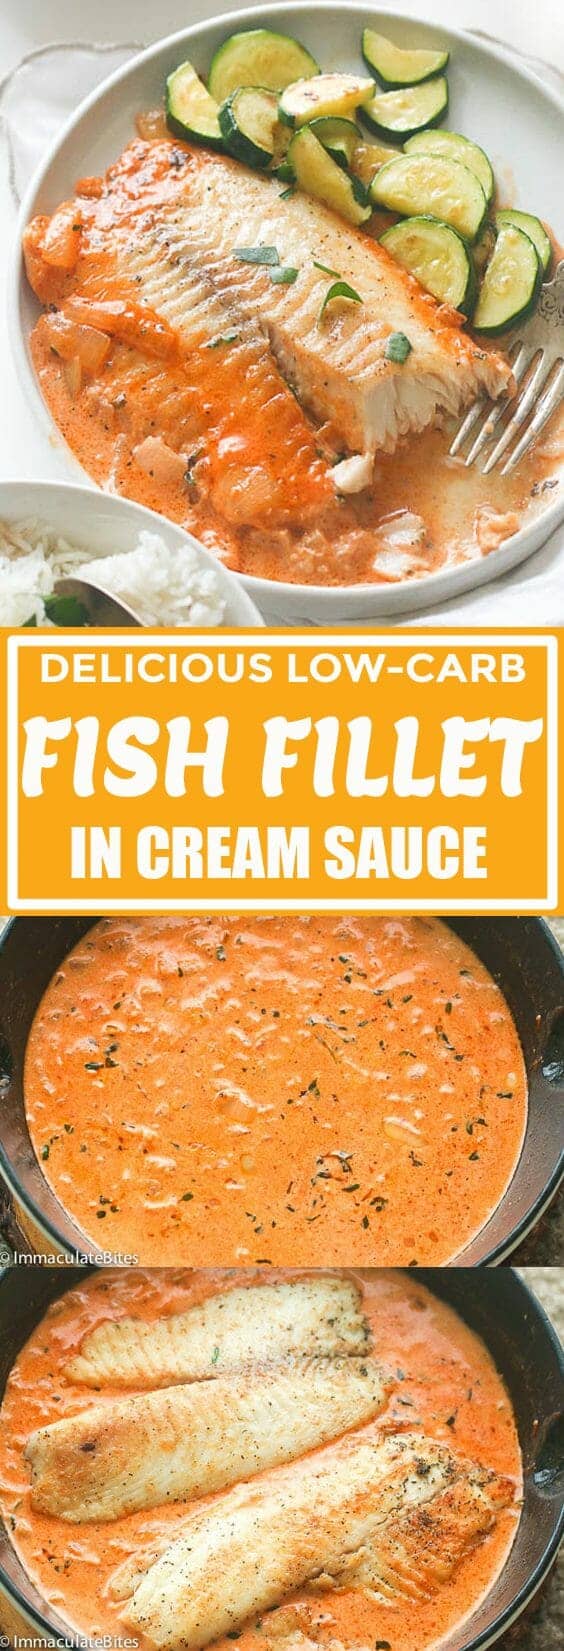 Fish Fillet in Cream Sauce